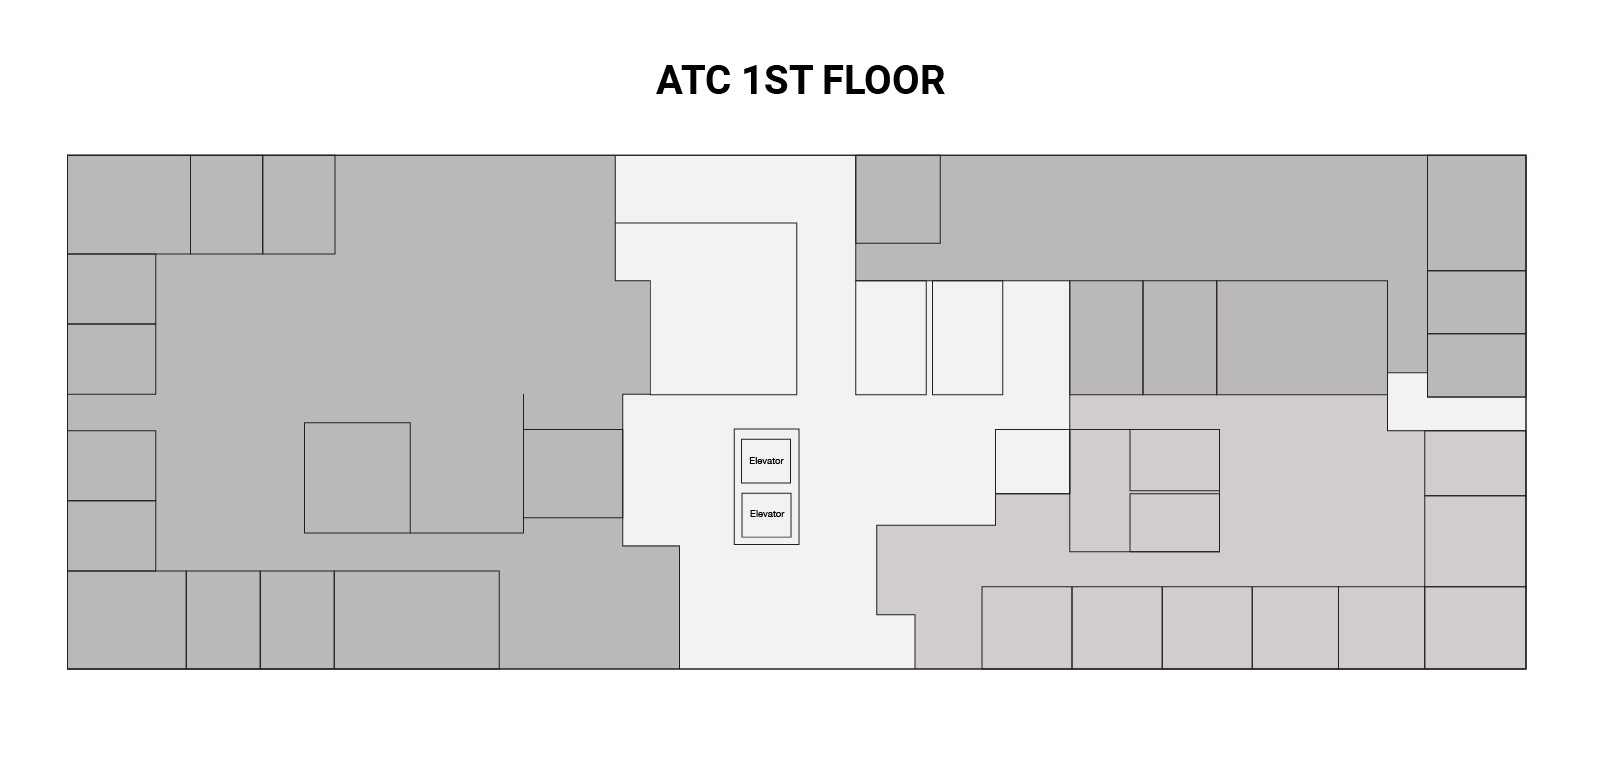 ATC 1st Floor